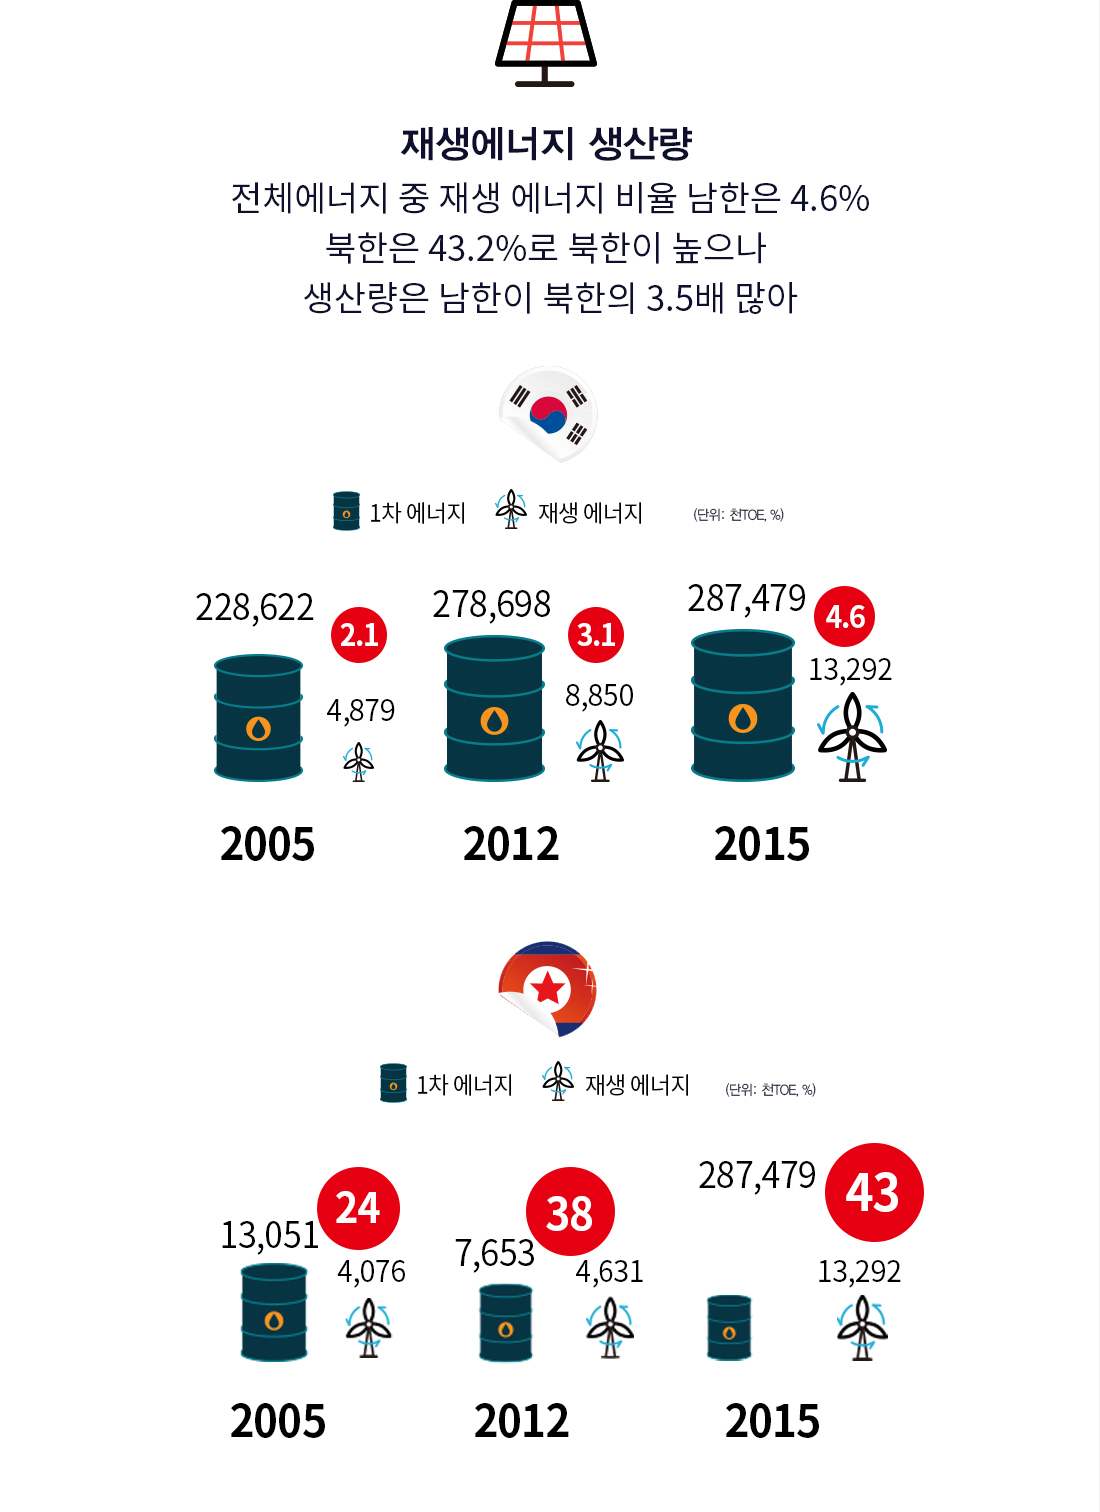 재생에너지 생산량 전체에너지 중 재생 에너지 비율 남한은 4.6% 북한은 43.2%로 북한이 높으나 생산량은 남한이 북한의 3.5배 많아